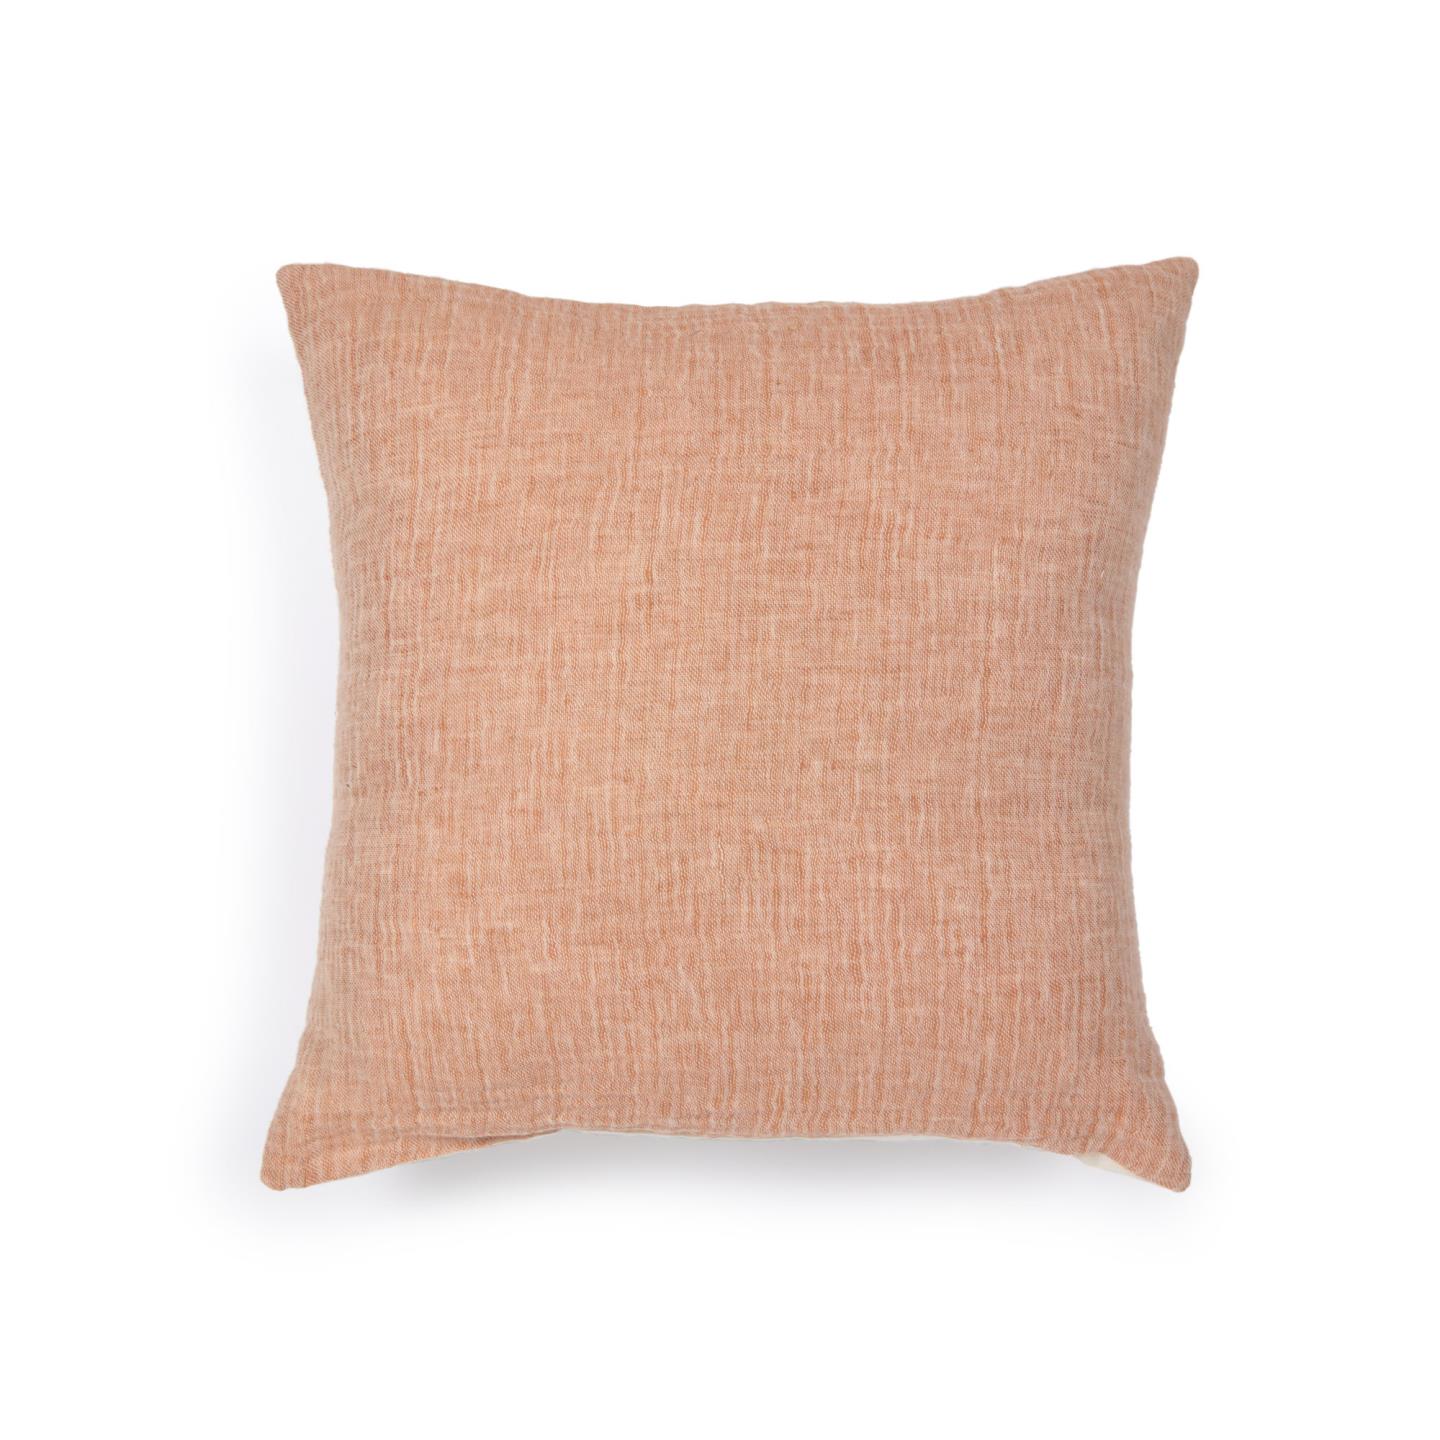 Casilda Чехол на подушку из розового хлопка и льна 45 x 45 см